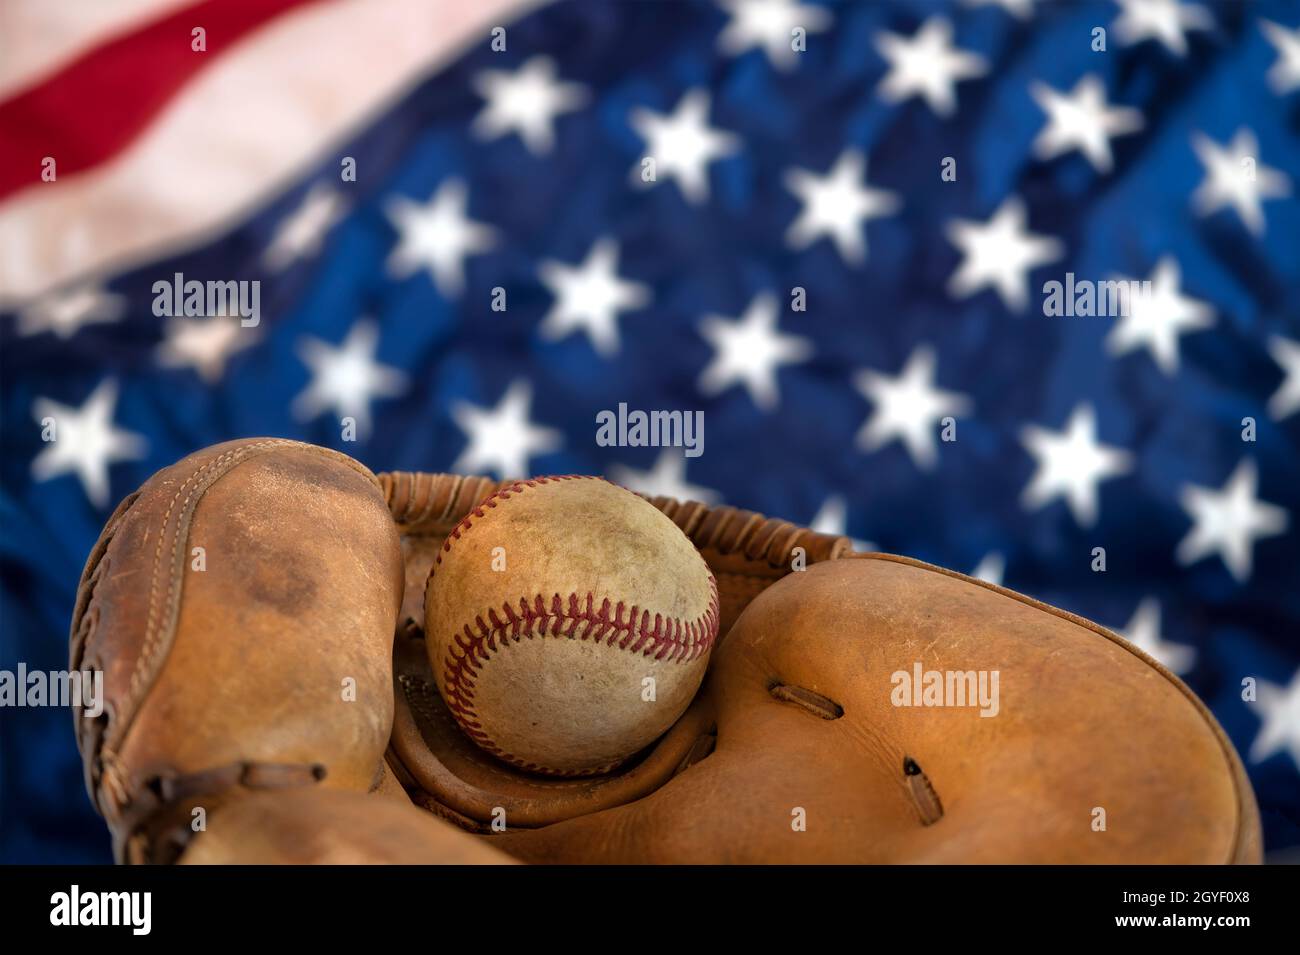 Die Nahaufnahme eines alten Baseballs und der Handschuh gegen die amerikanische Flagge zeigen eine der beliebtesten Sportarten des Landes. Stockfoto